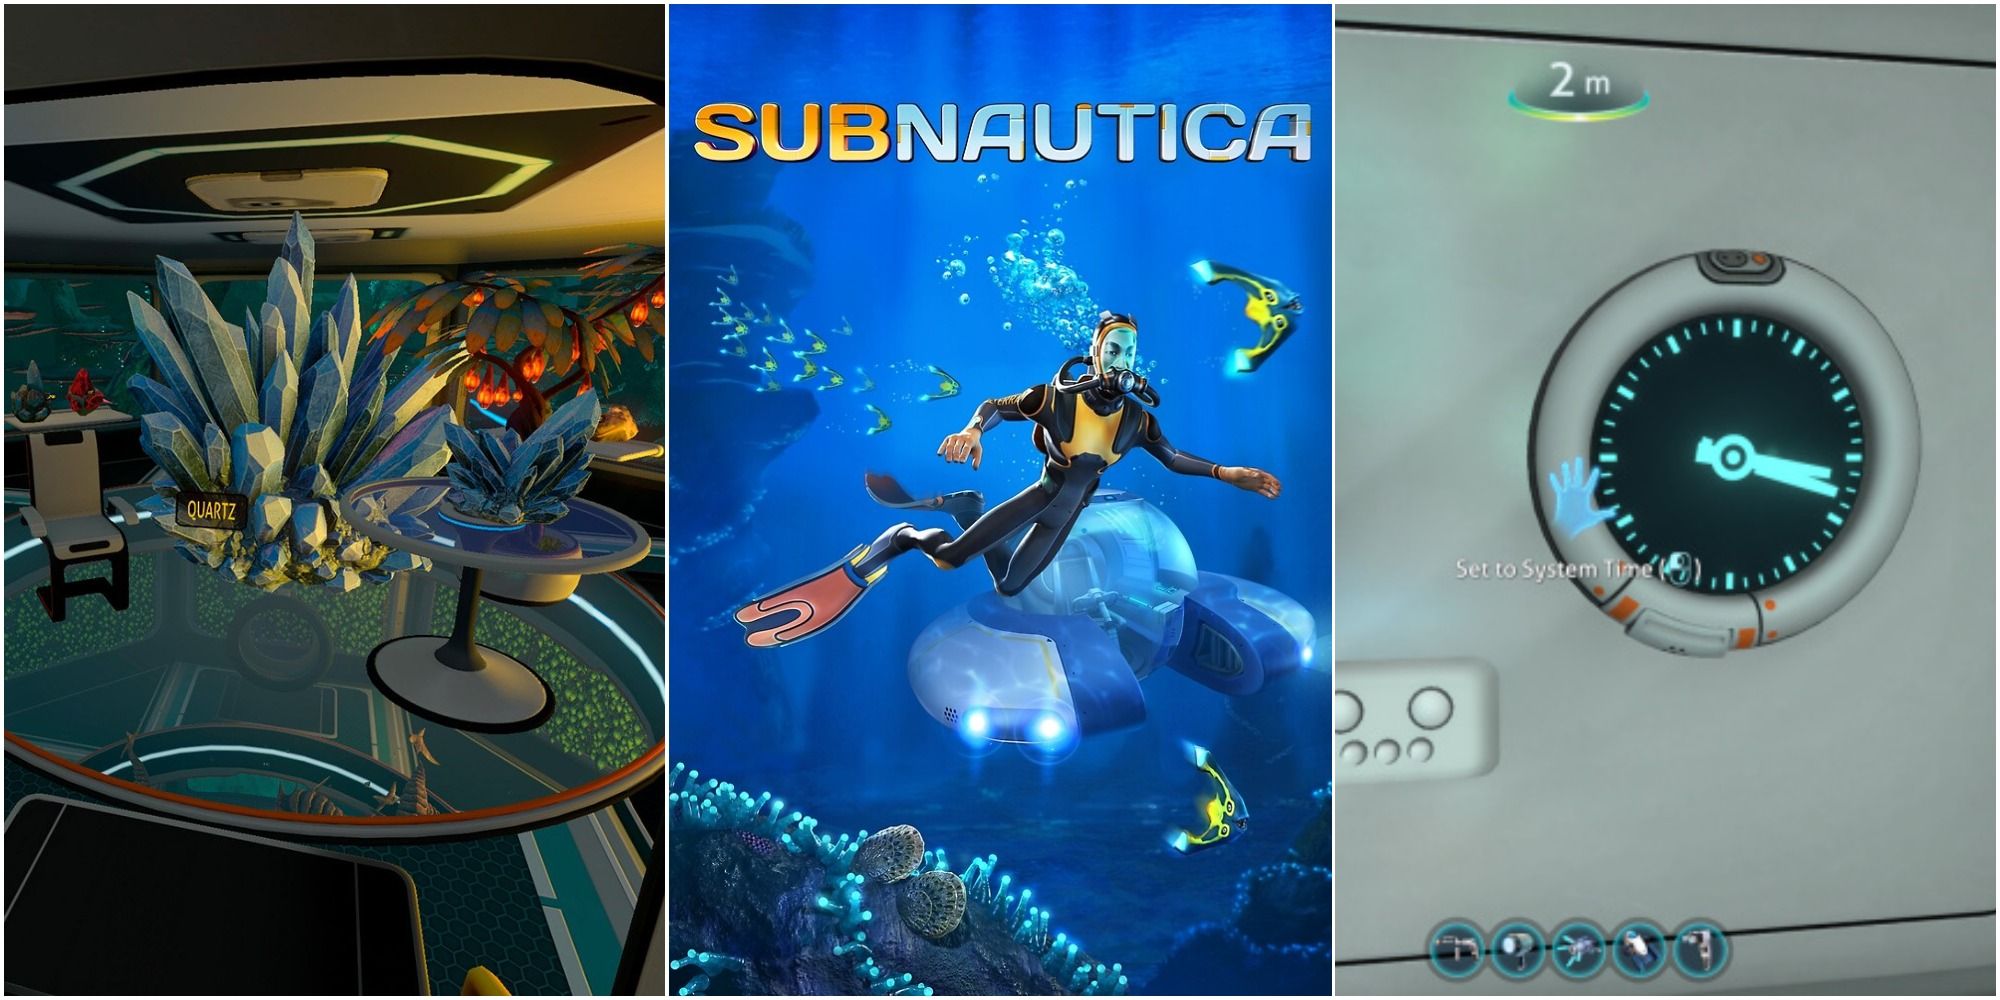 subnautica mods resources